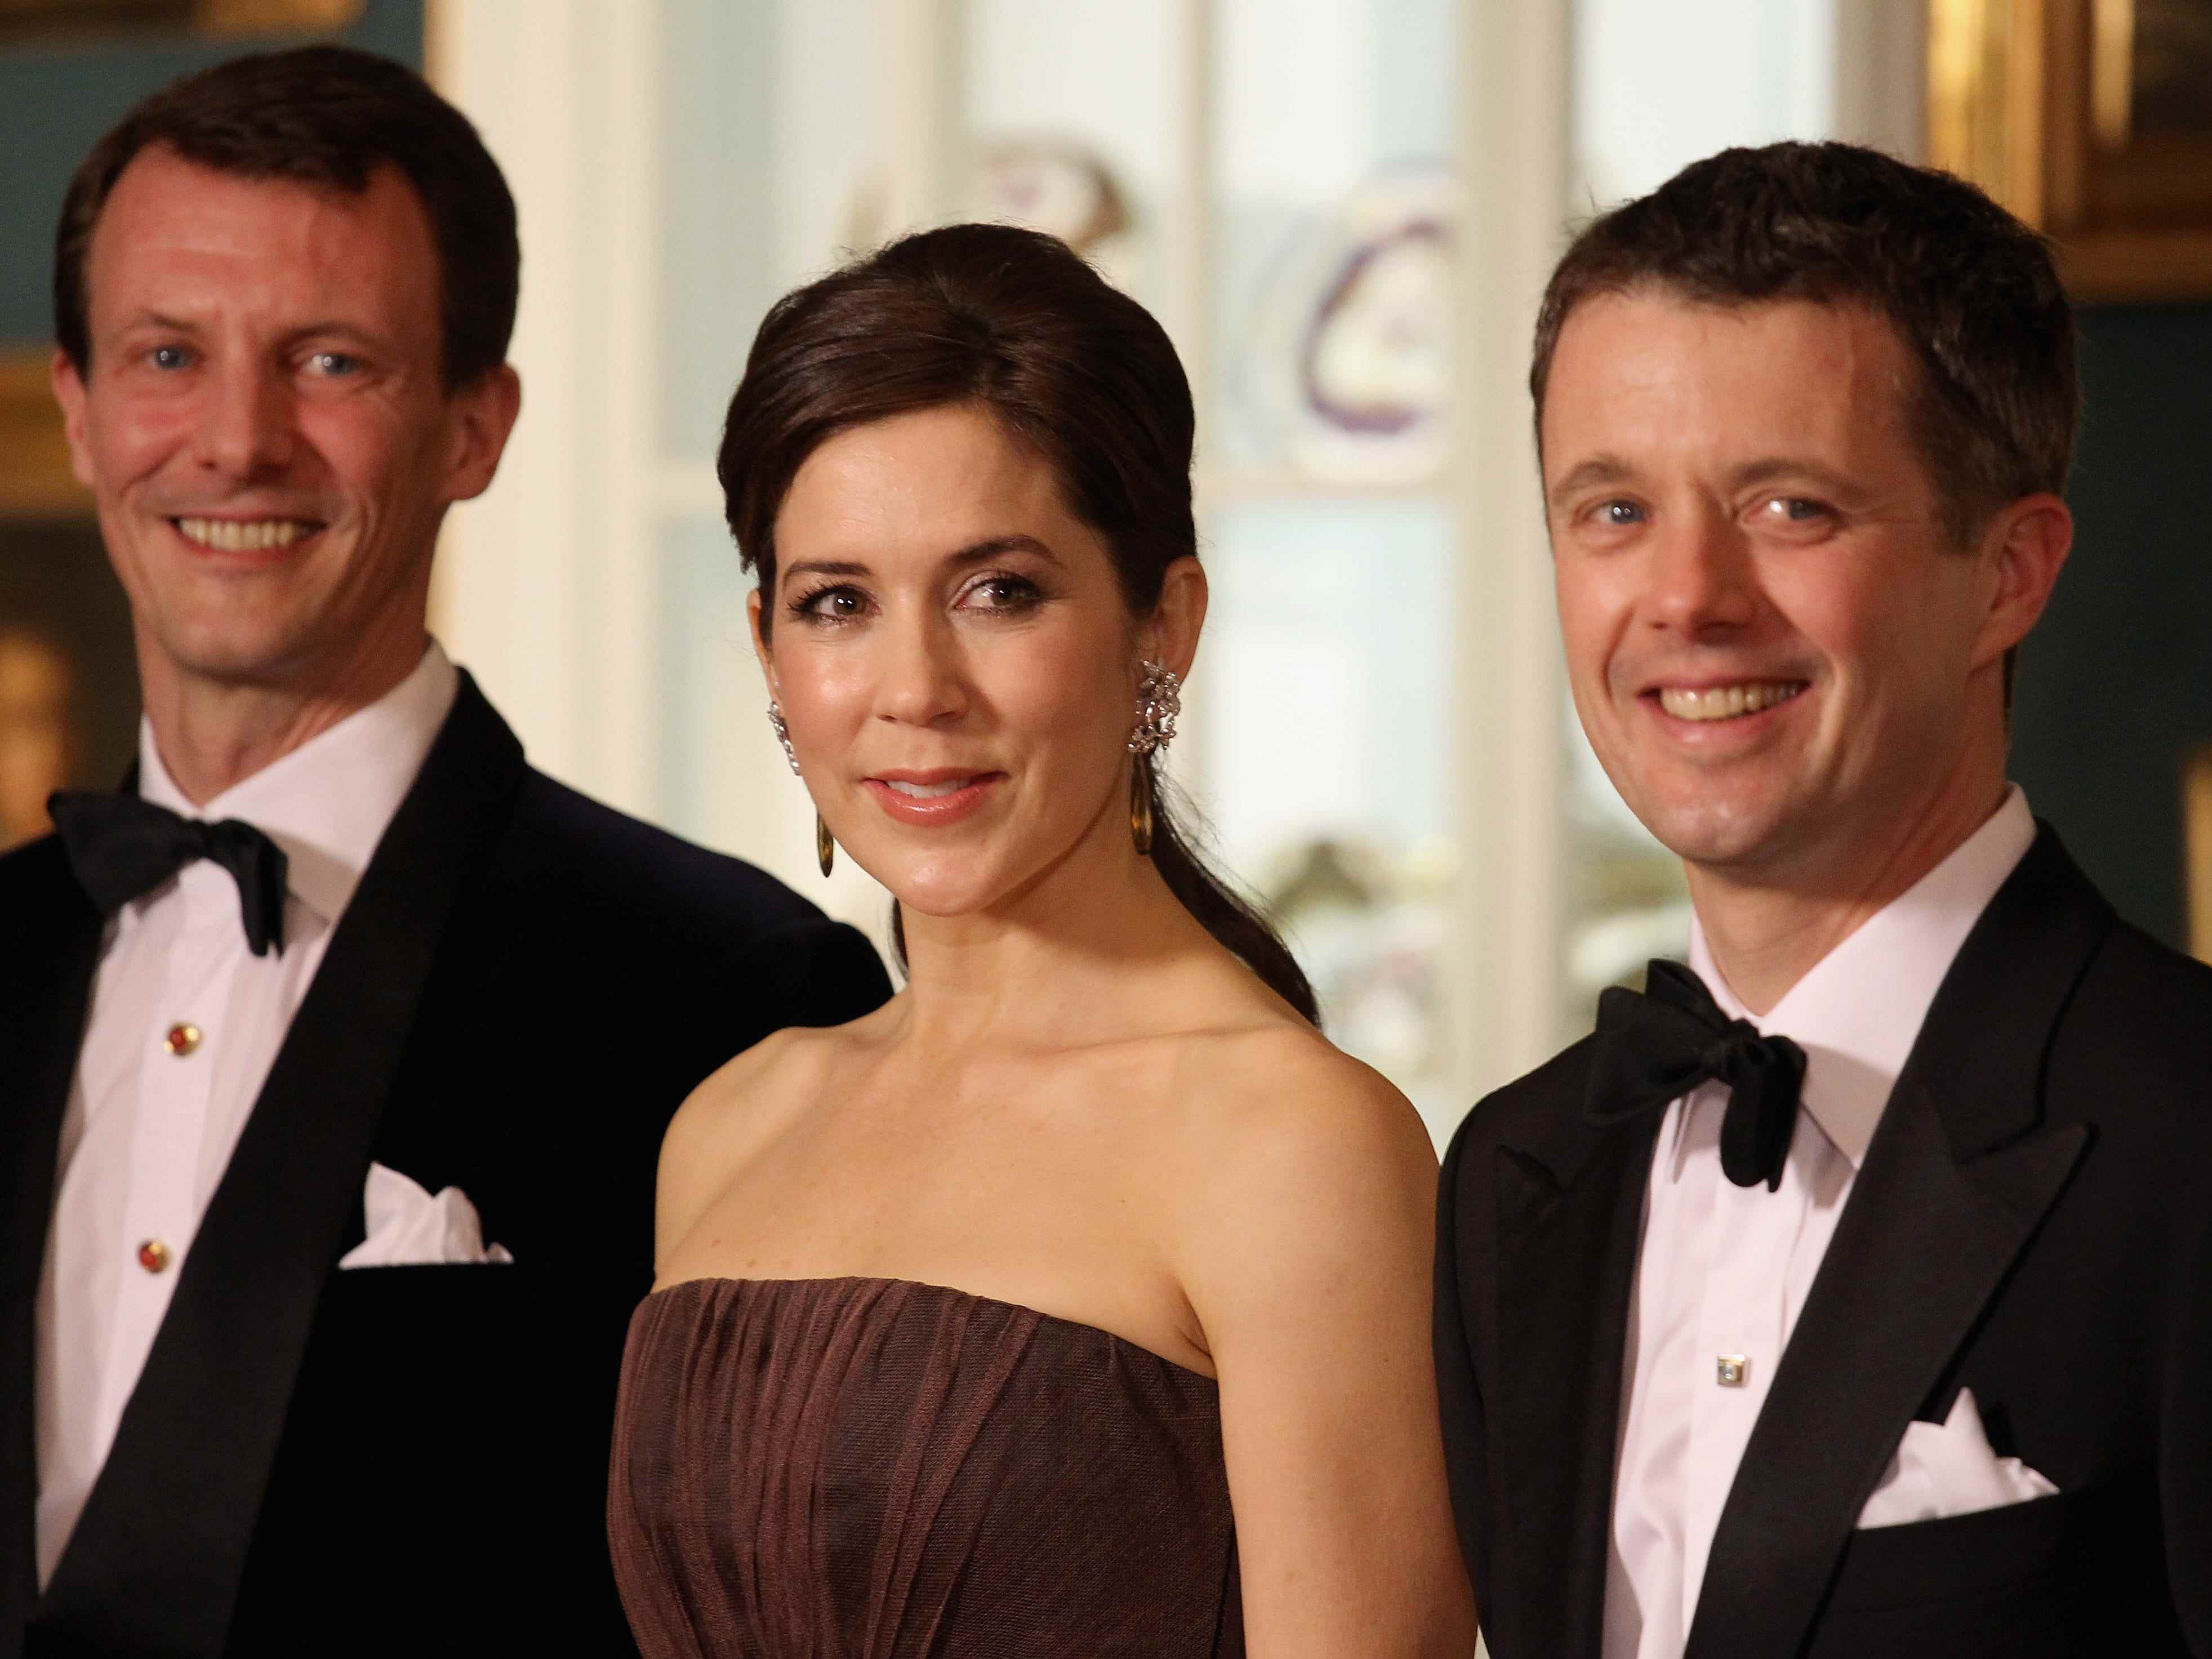 Prinz Joachim von Dänemark, Kronprinzessin Mary von Dänemark und Kronprinz Frederik von Dänemark